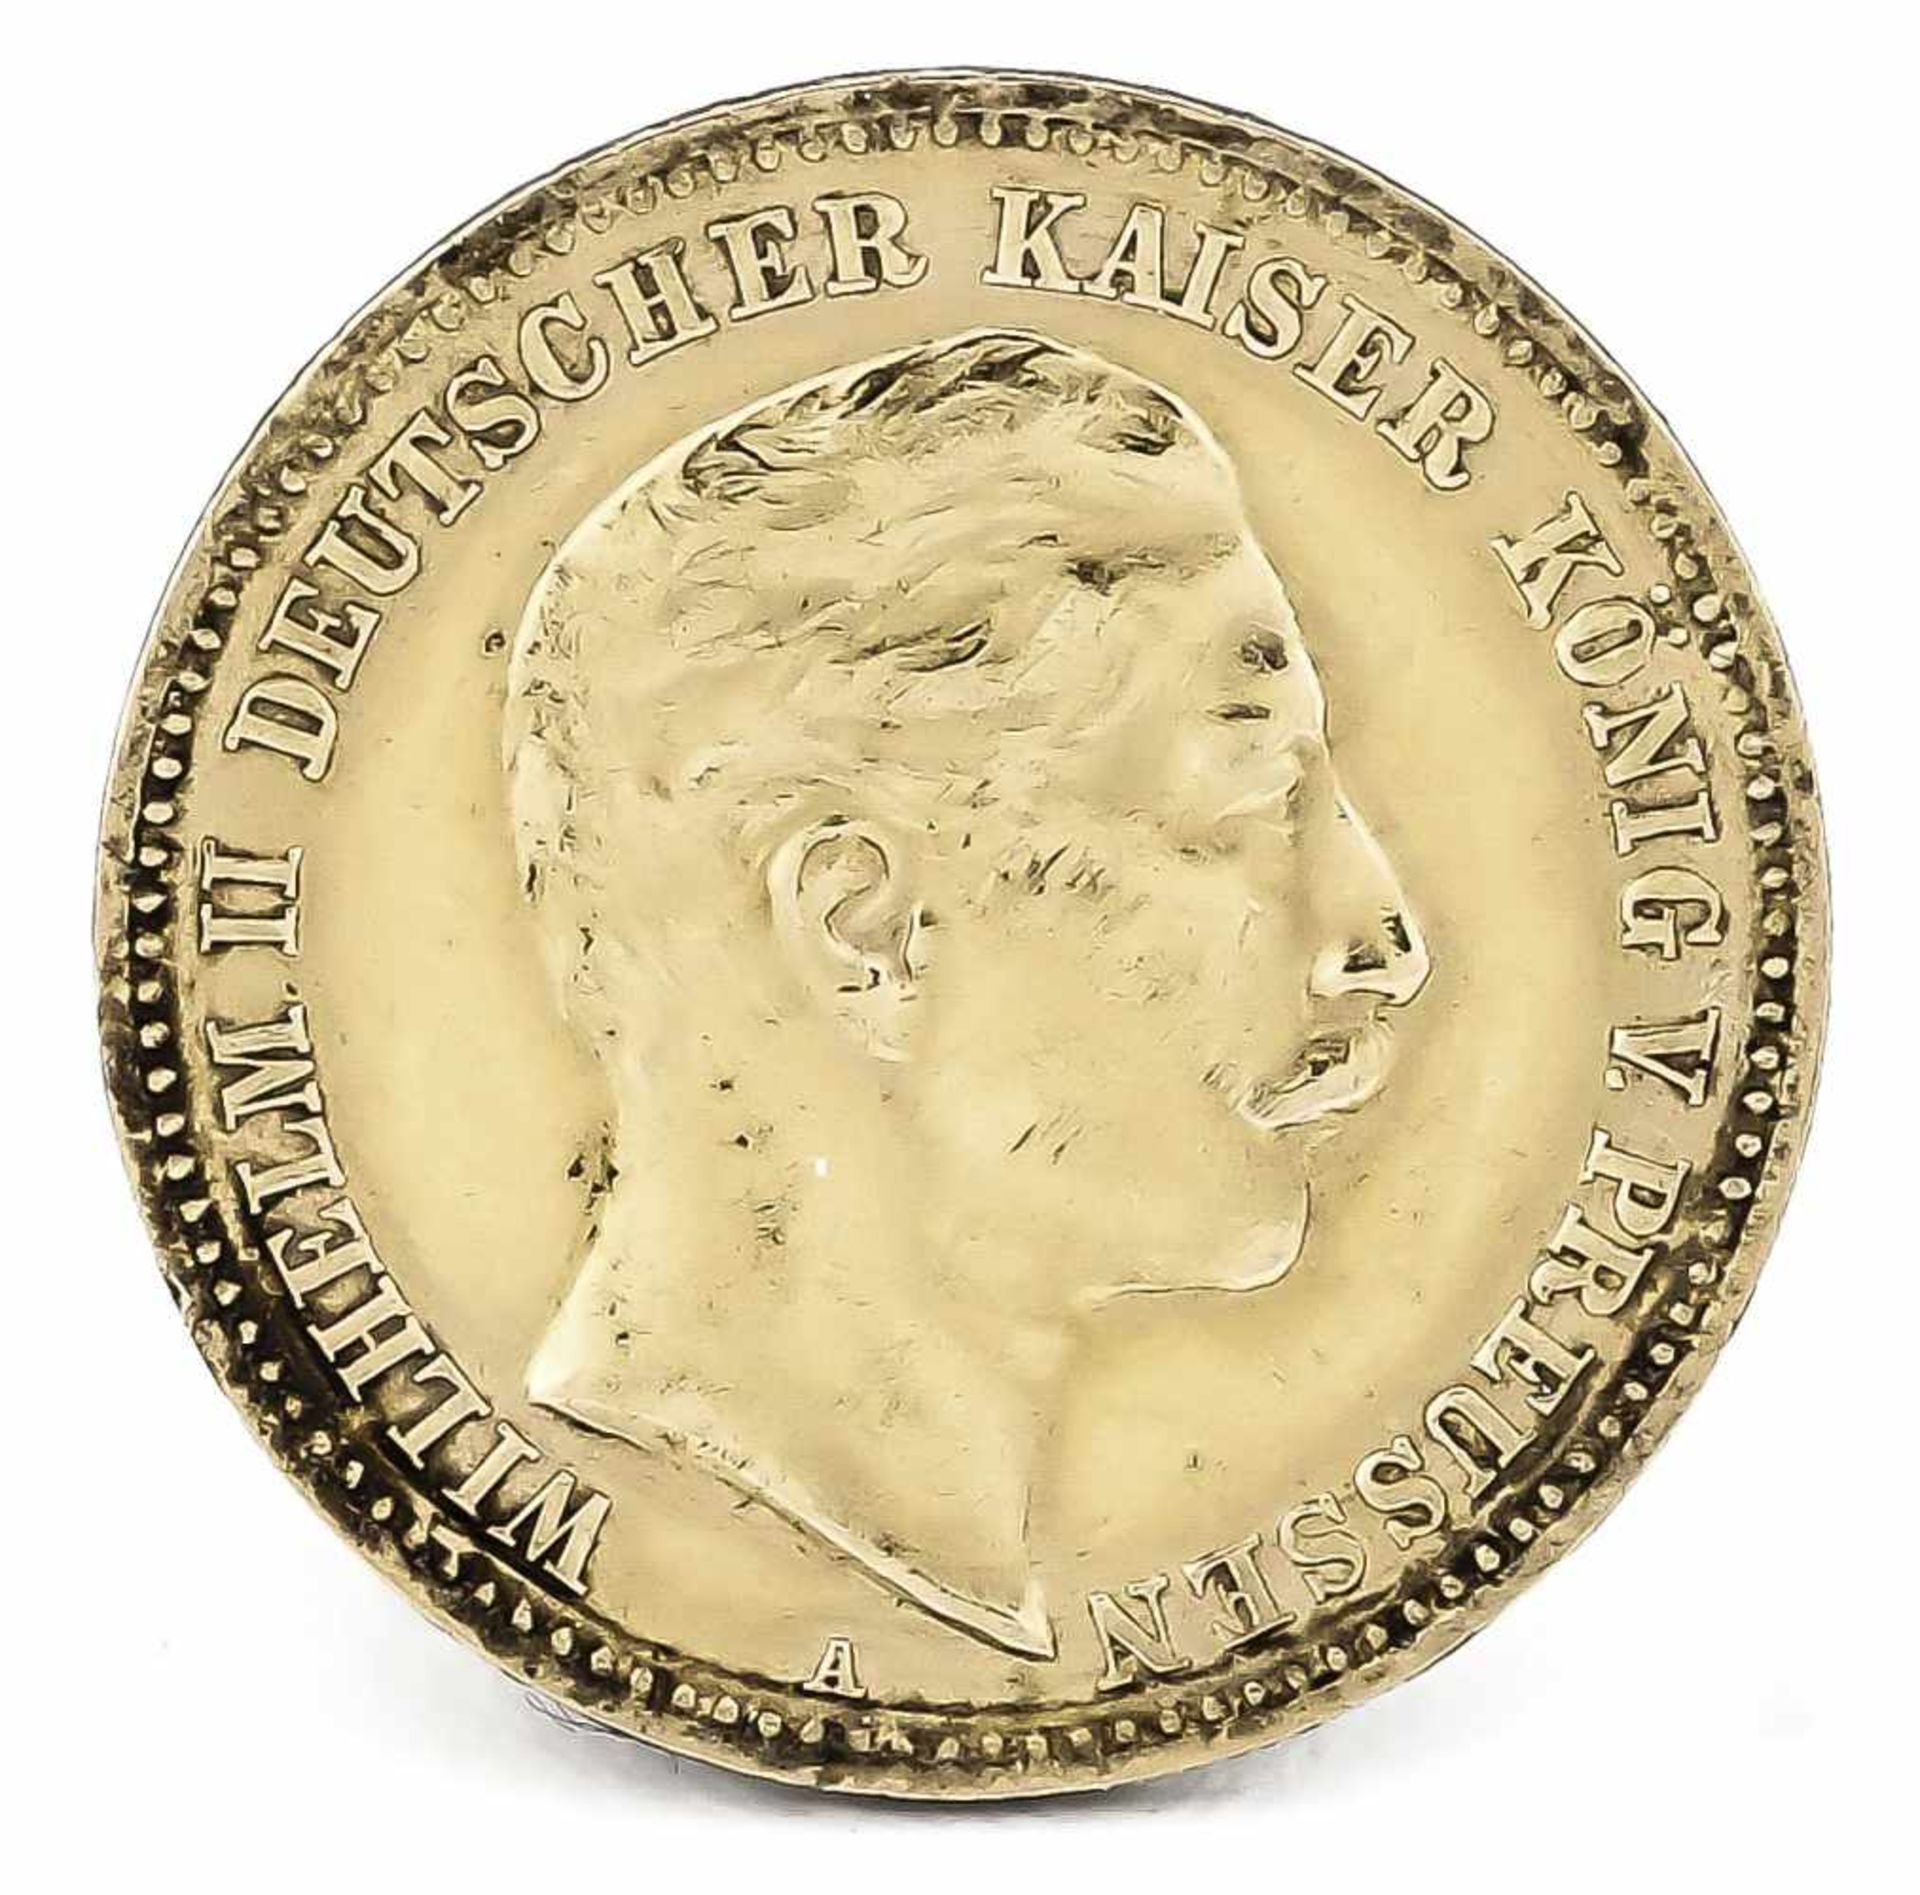 10 Mark, Preußen, Wilhelm II. Deutscher Kaiser König von Preußen, 1903 A, in vz